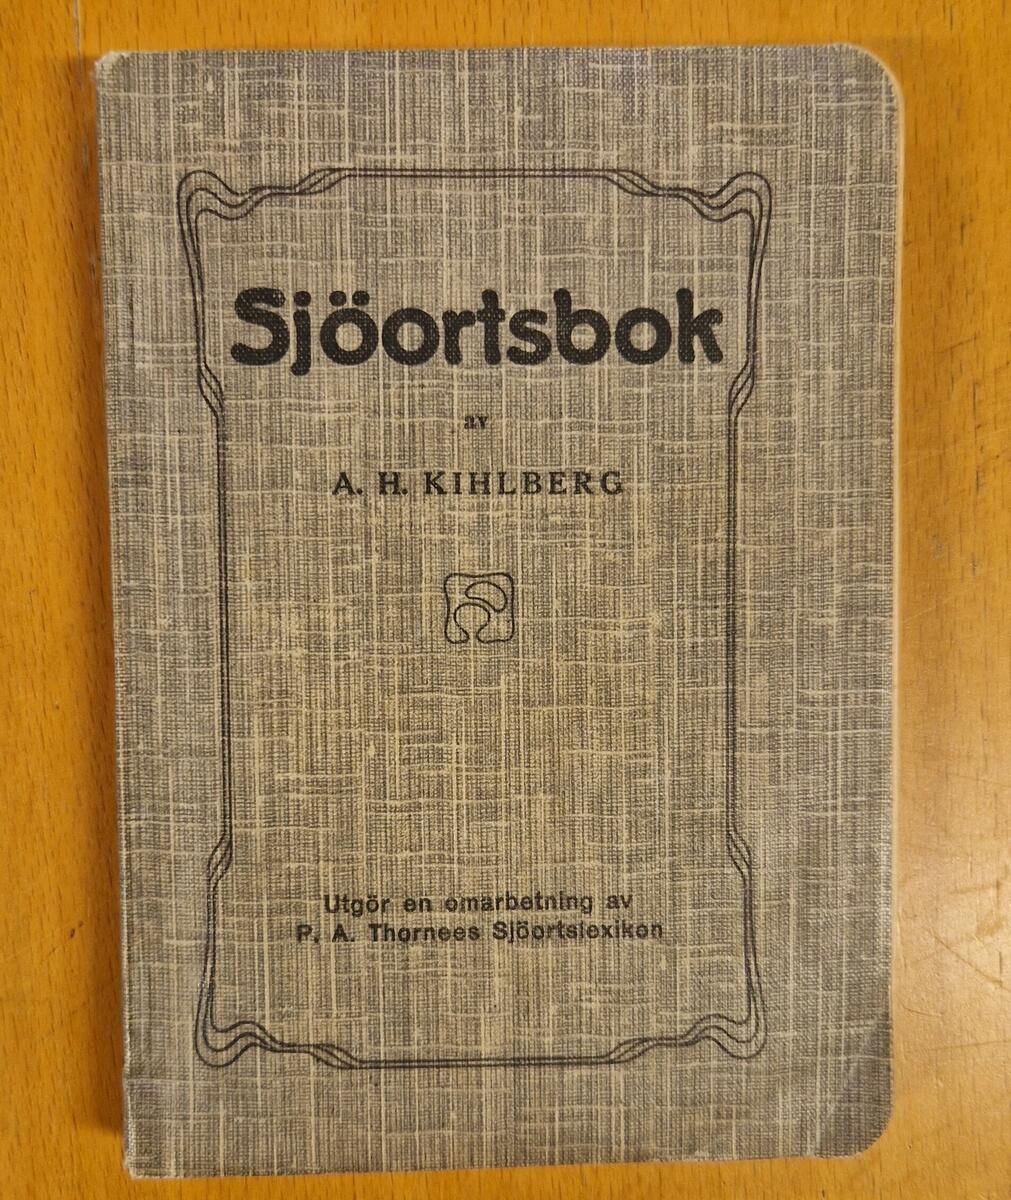 Sjöortsbok av A H Kihlberg. Utgör en omarbetning av P A Thornees Sjöortslexikon. Pris: 6:50. Gåva av Lena Eklöf Viklund, Sundsvall.